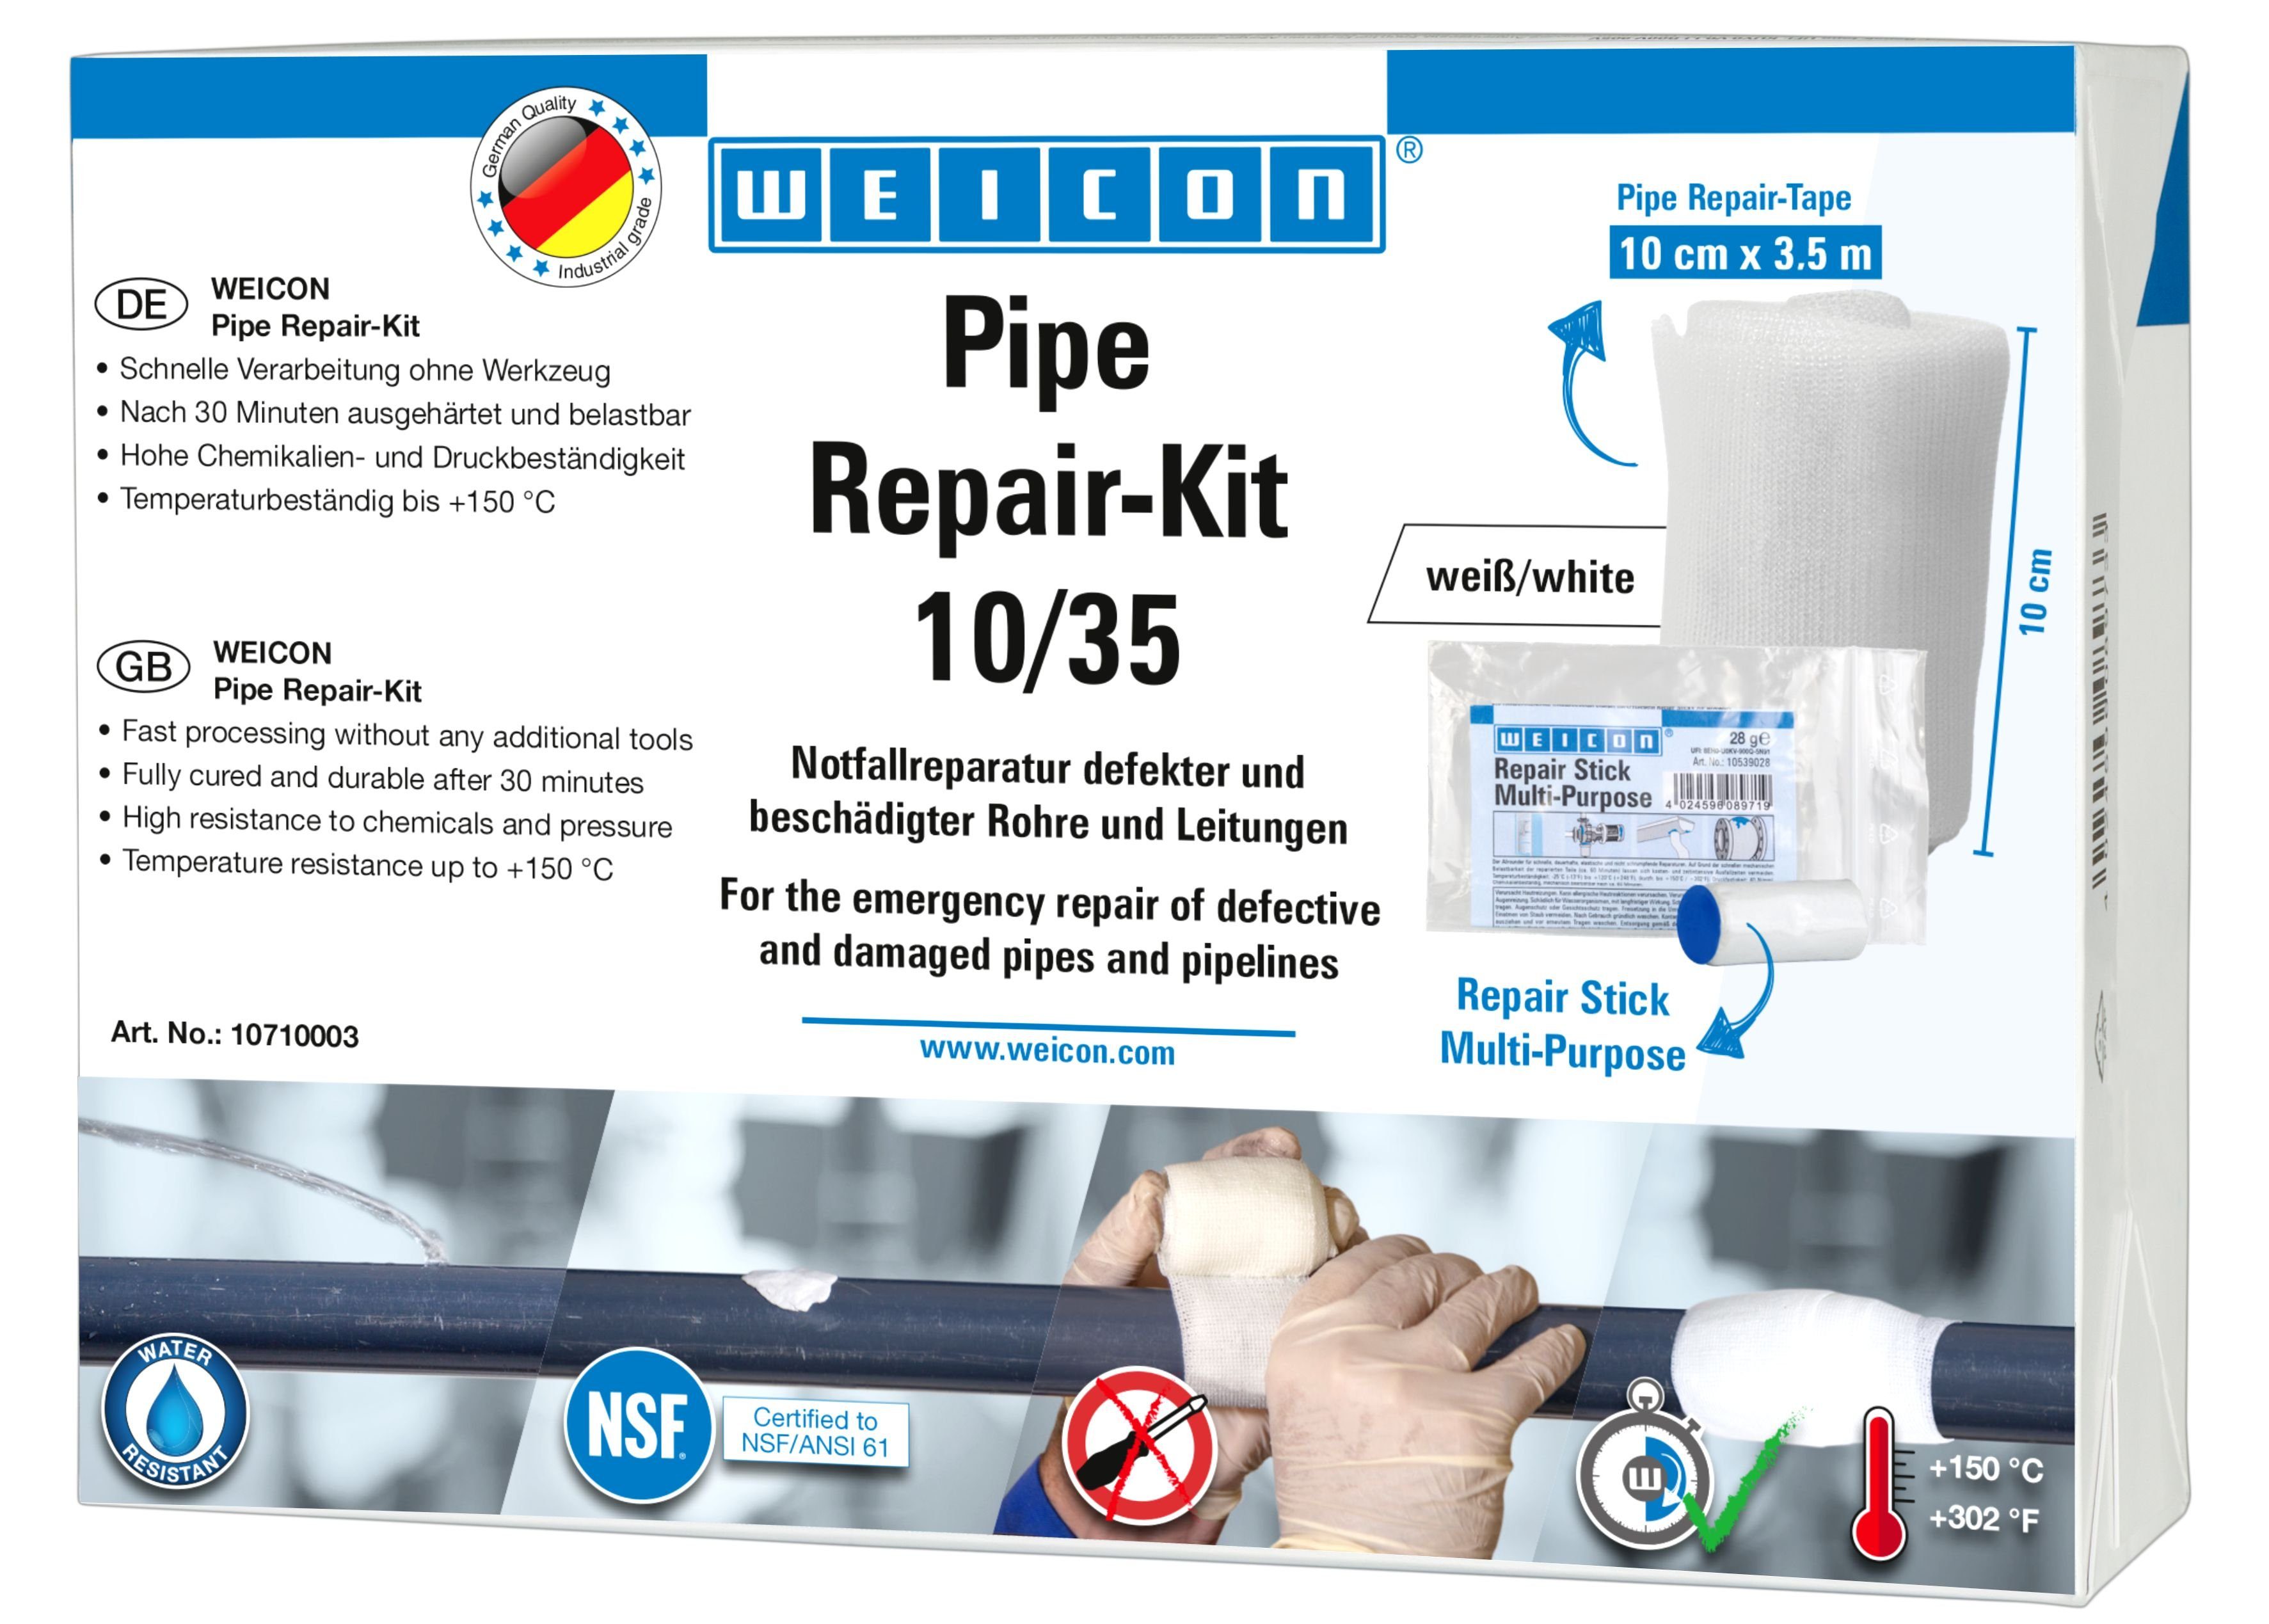 WEICON Reparatur-Set Pipe Repair-Kit, Notfall-Reparatur beschädigter Rohre und Leitungen 3,5 m x 10 cm